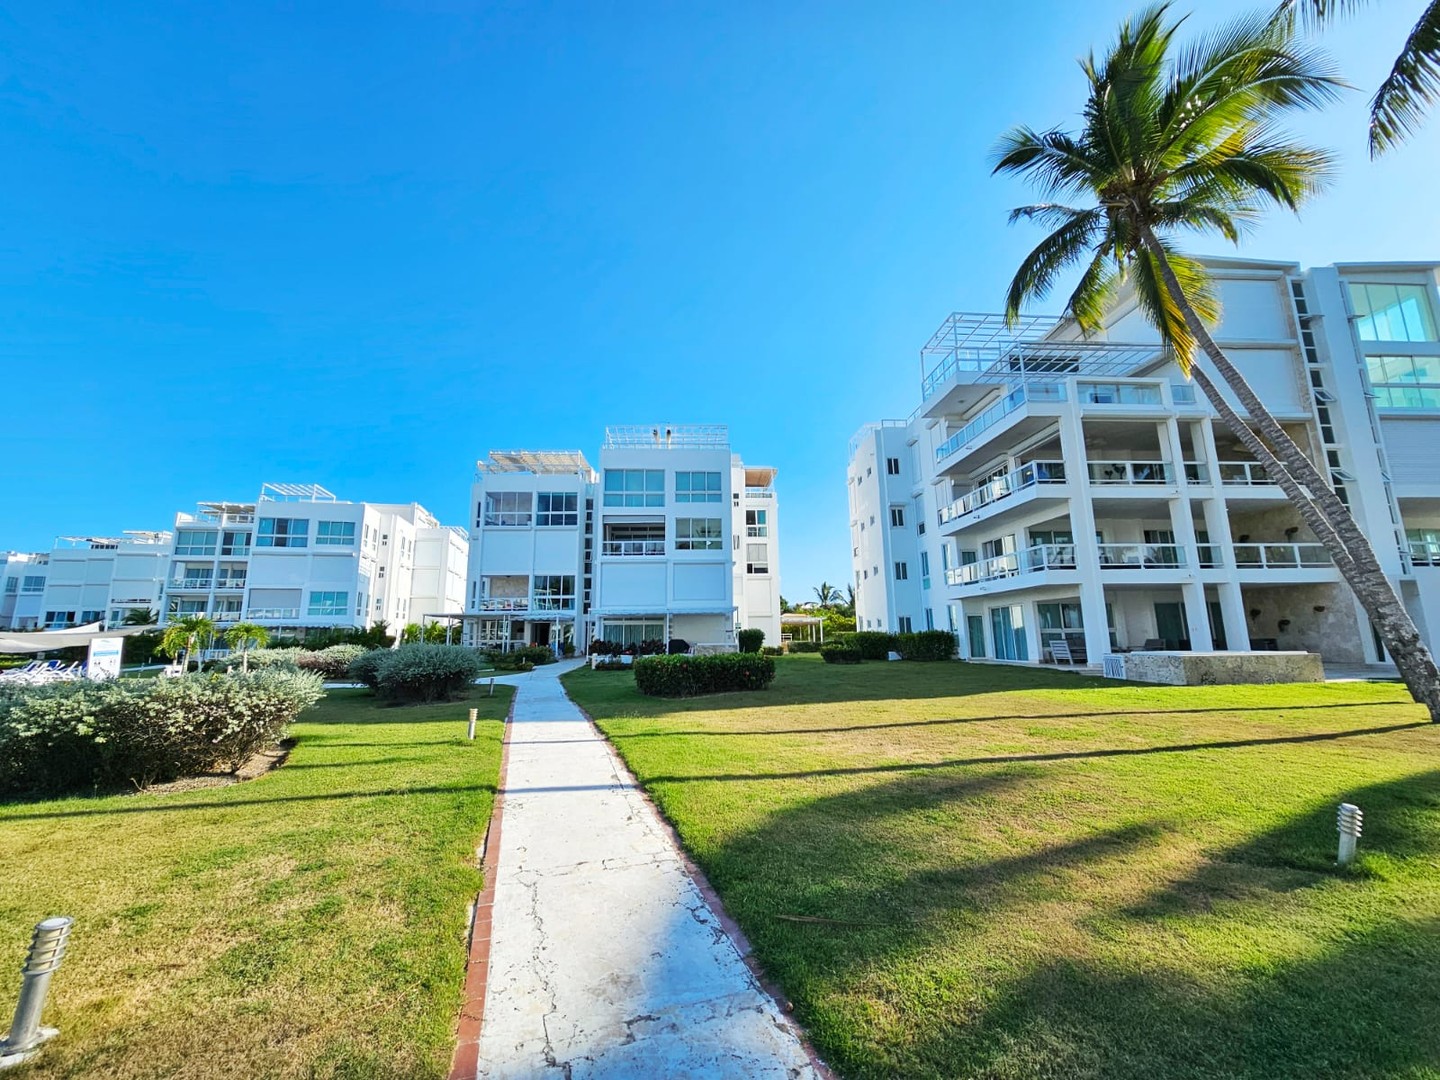 apartamentos - Apartamento en venta, playa Nueva Romana USD$230,000 - AMUEBLADO

